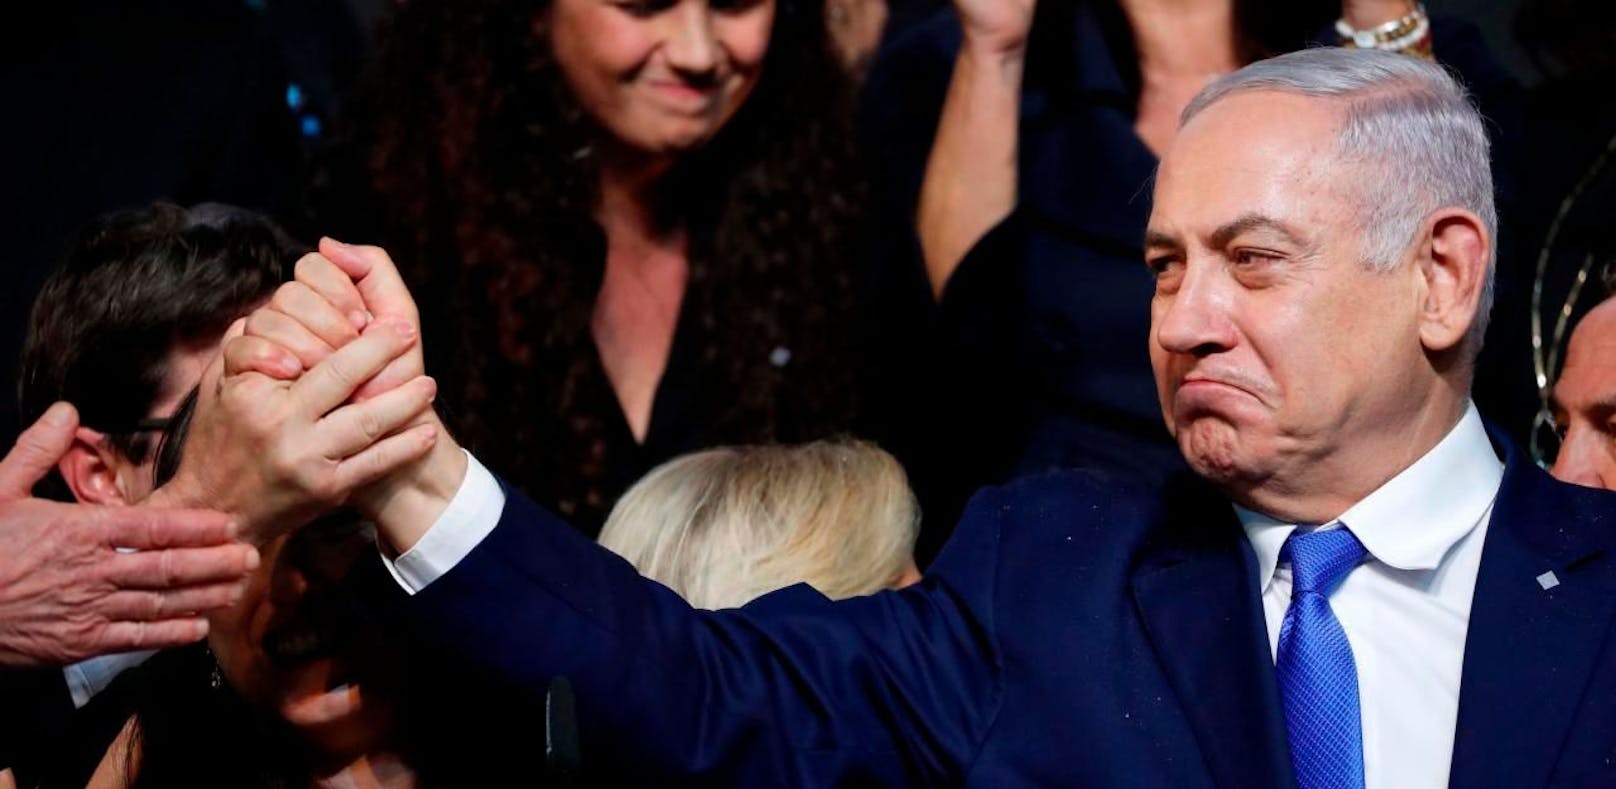 Benjamin Netanjahu hat die Wahlen in Israel mit hauchdünner Mehrheit gewonnen. Er wird damit wohl Israels erster Premierminister, der eine fünfte Amtszeit antritt. 